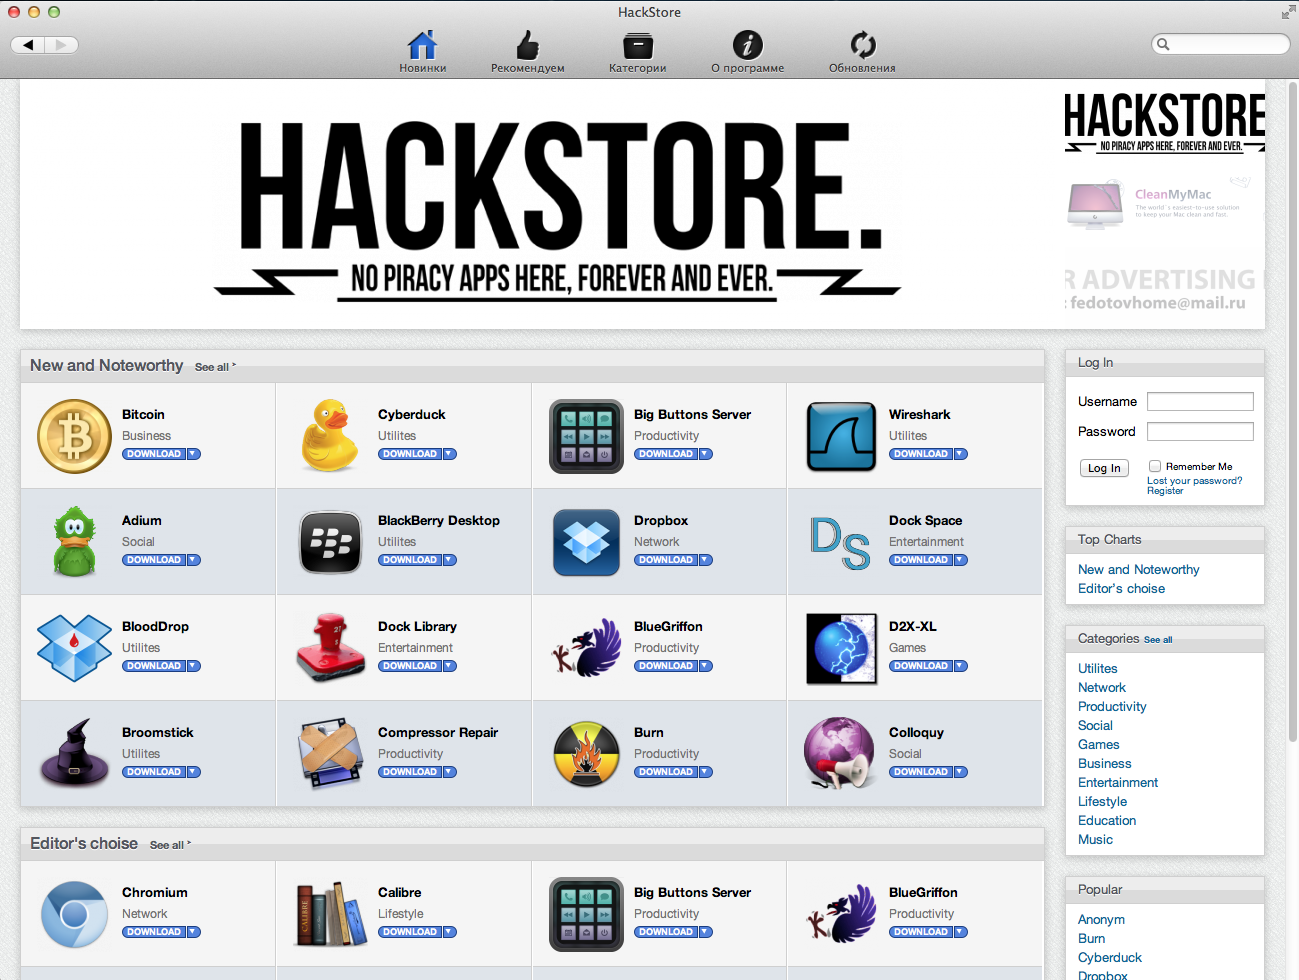 HackStore — Ребрендинг и новые плюшки в весеннем апдейте - 2